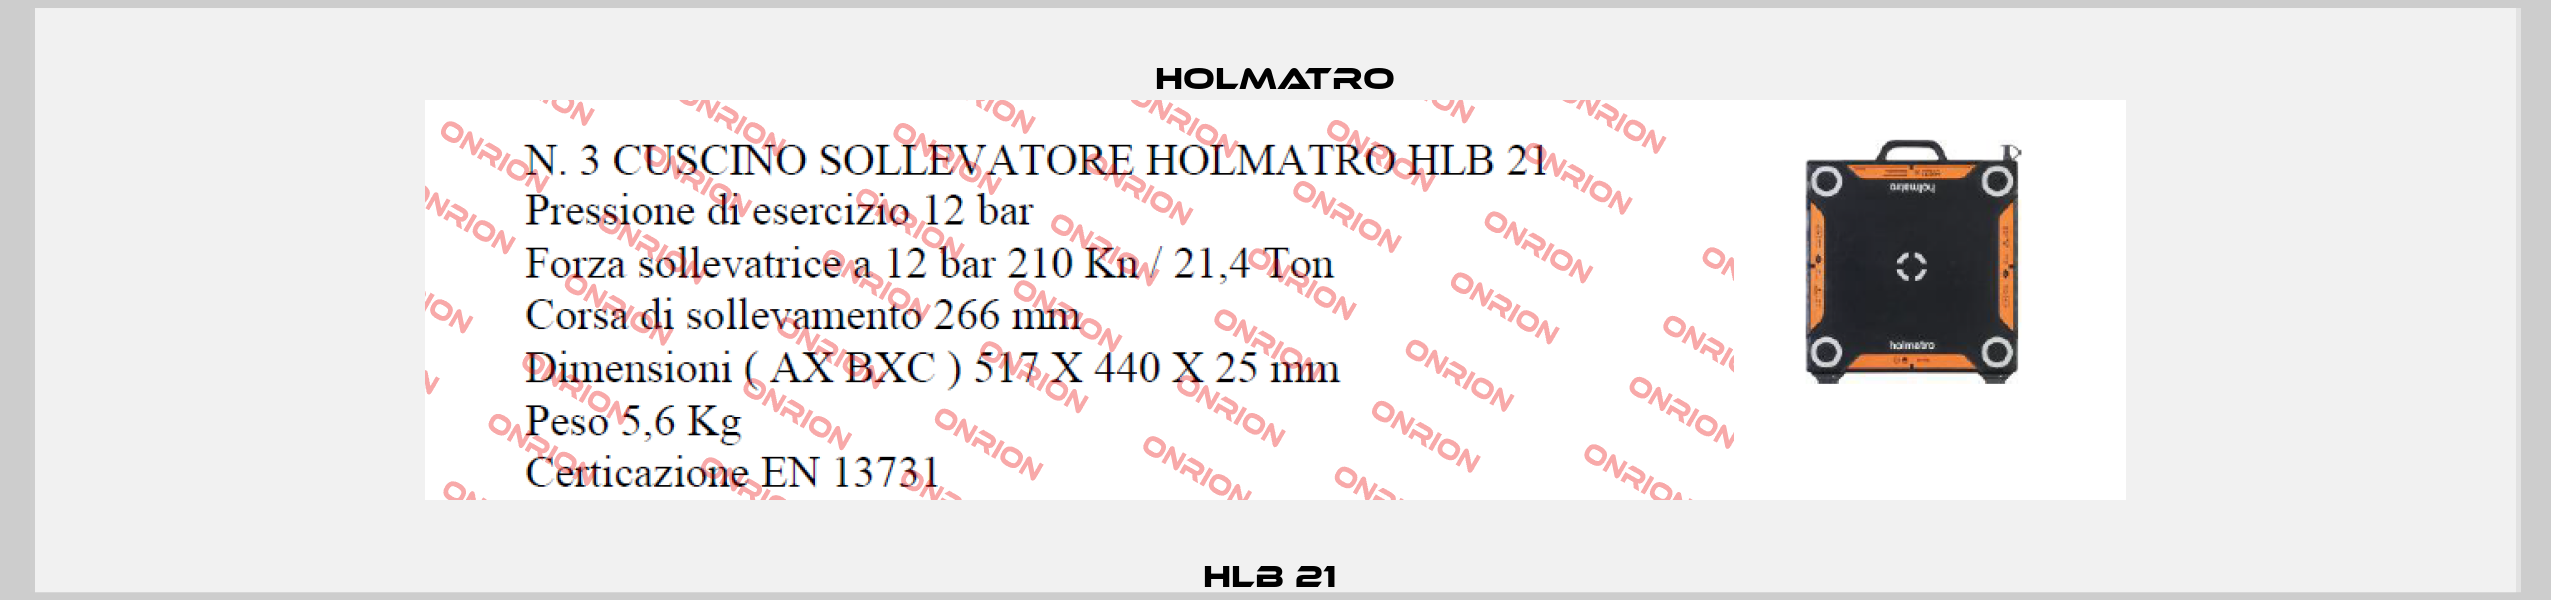 HLB 21  Holmatro